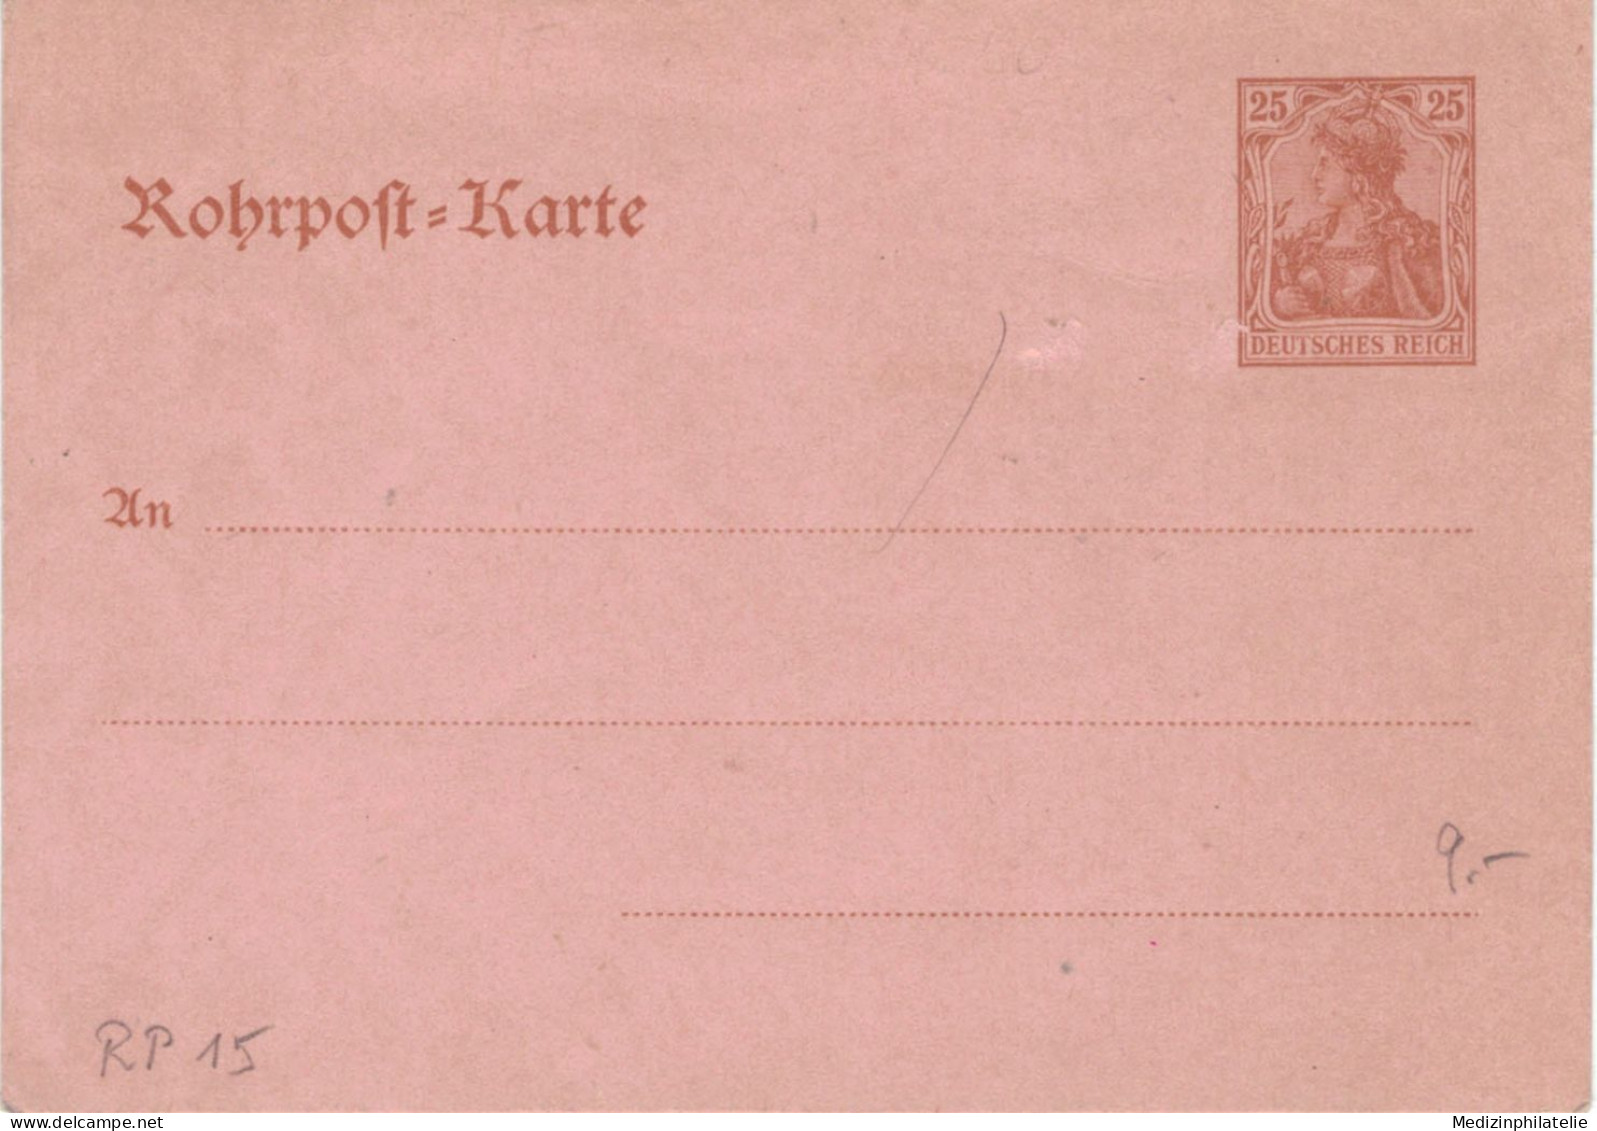 Rohrpost-Karte 25 Pf. Germania - Ungebraucht - 15 - Postcards